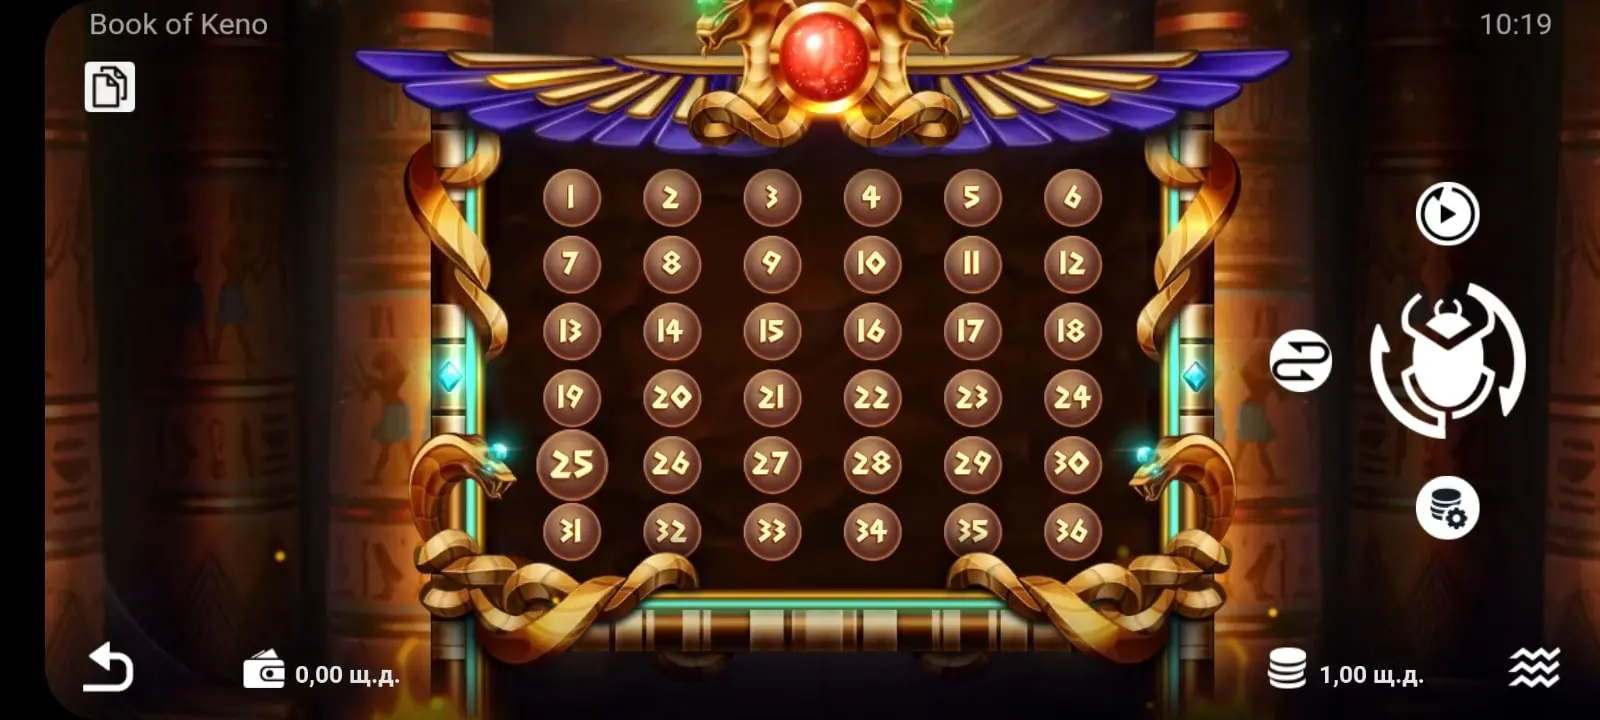 gunsbet casino app screenshot 8